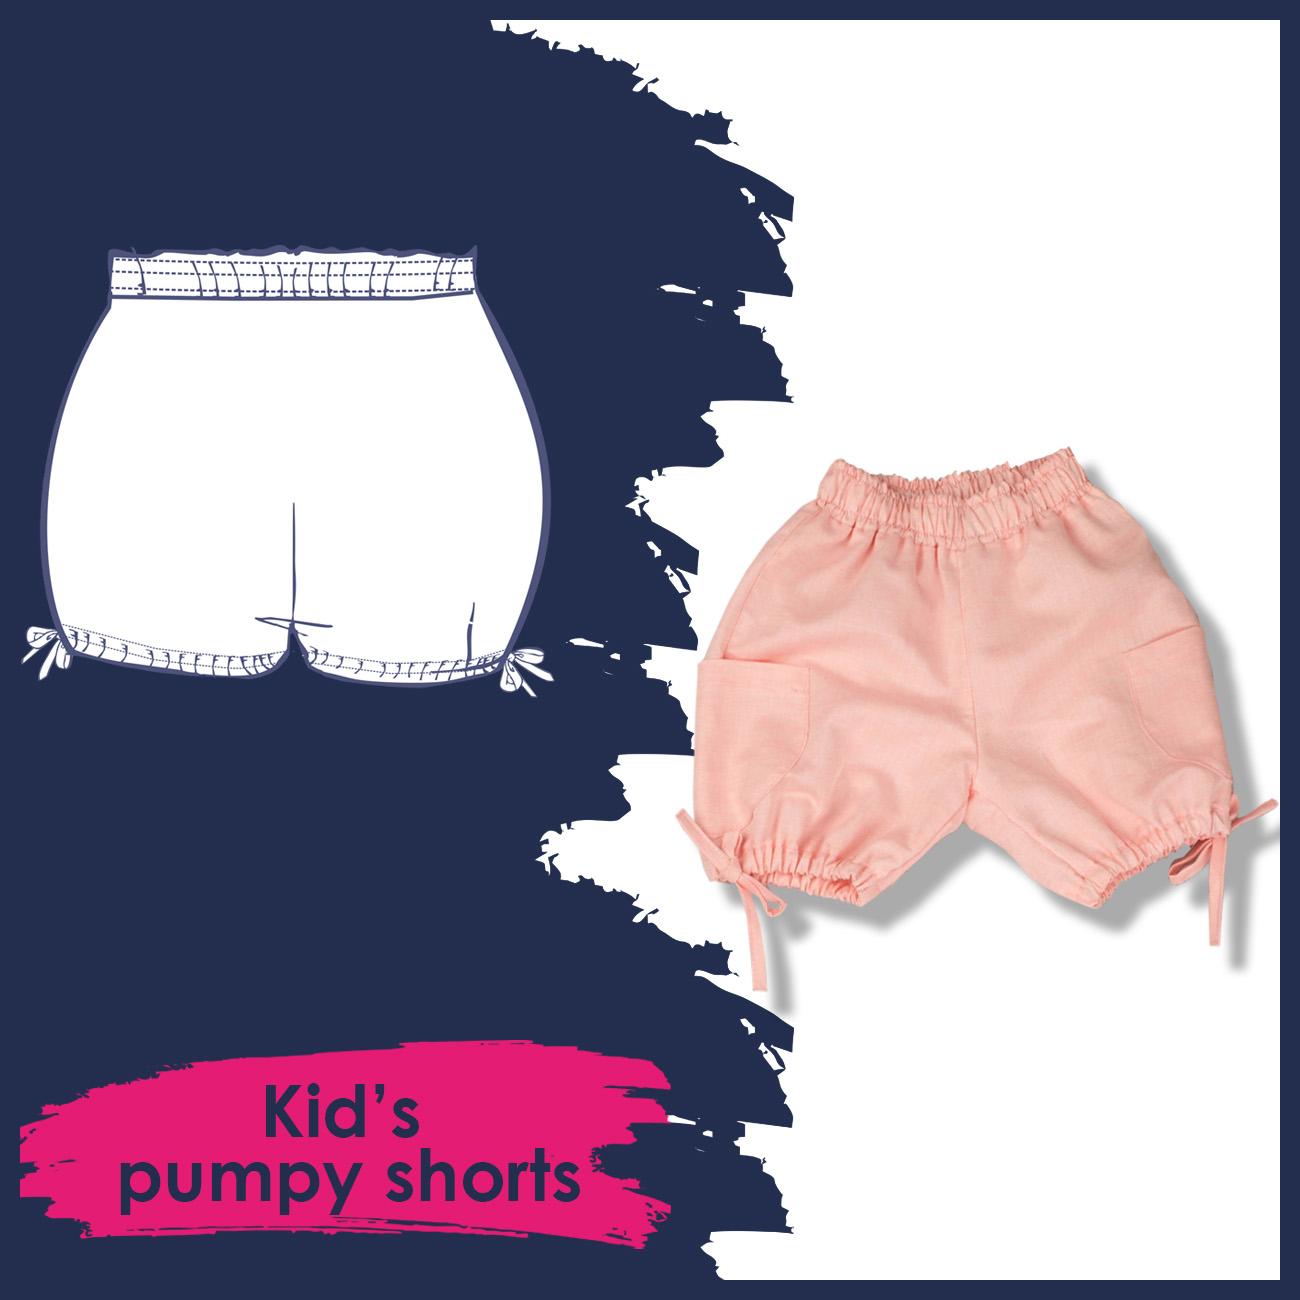 Kid's pumpy shorts